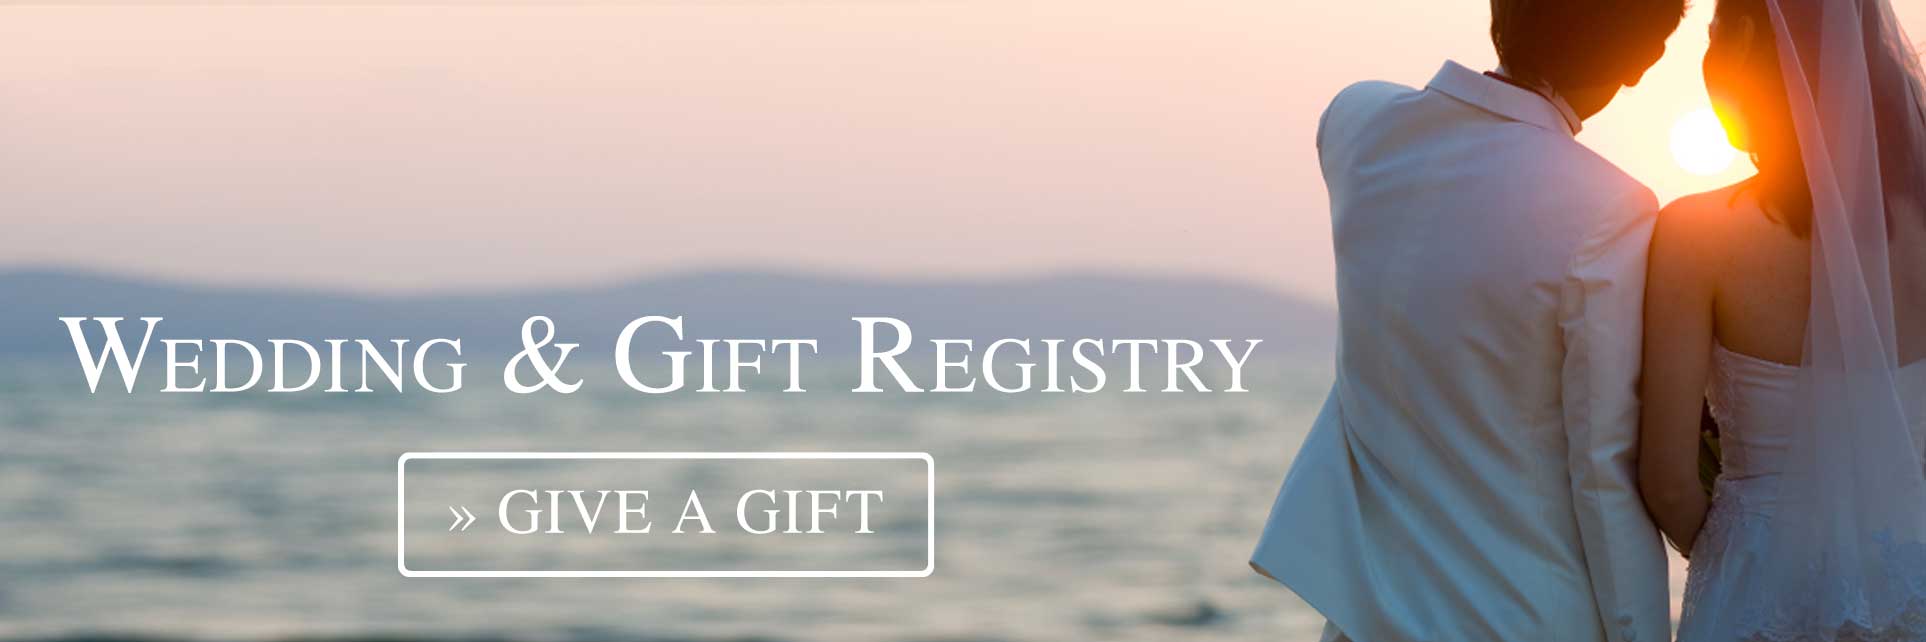 Bridal & Gift Registry slide